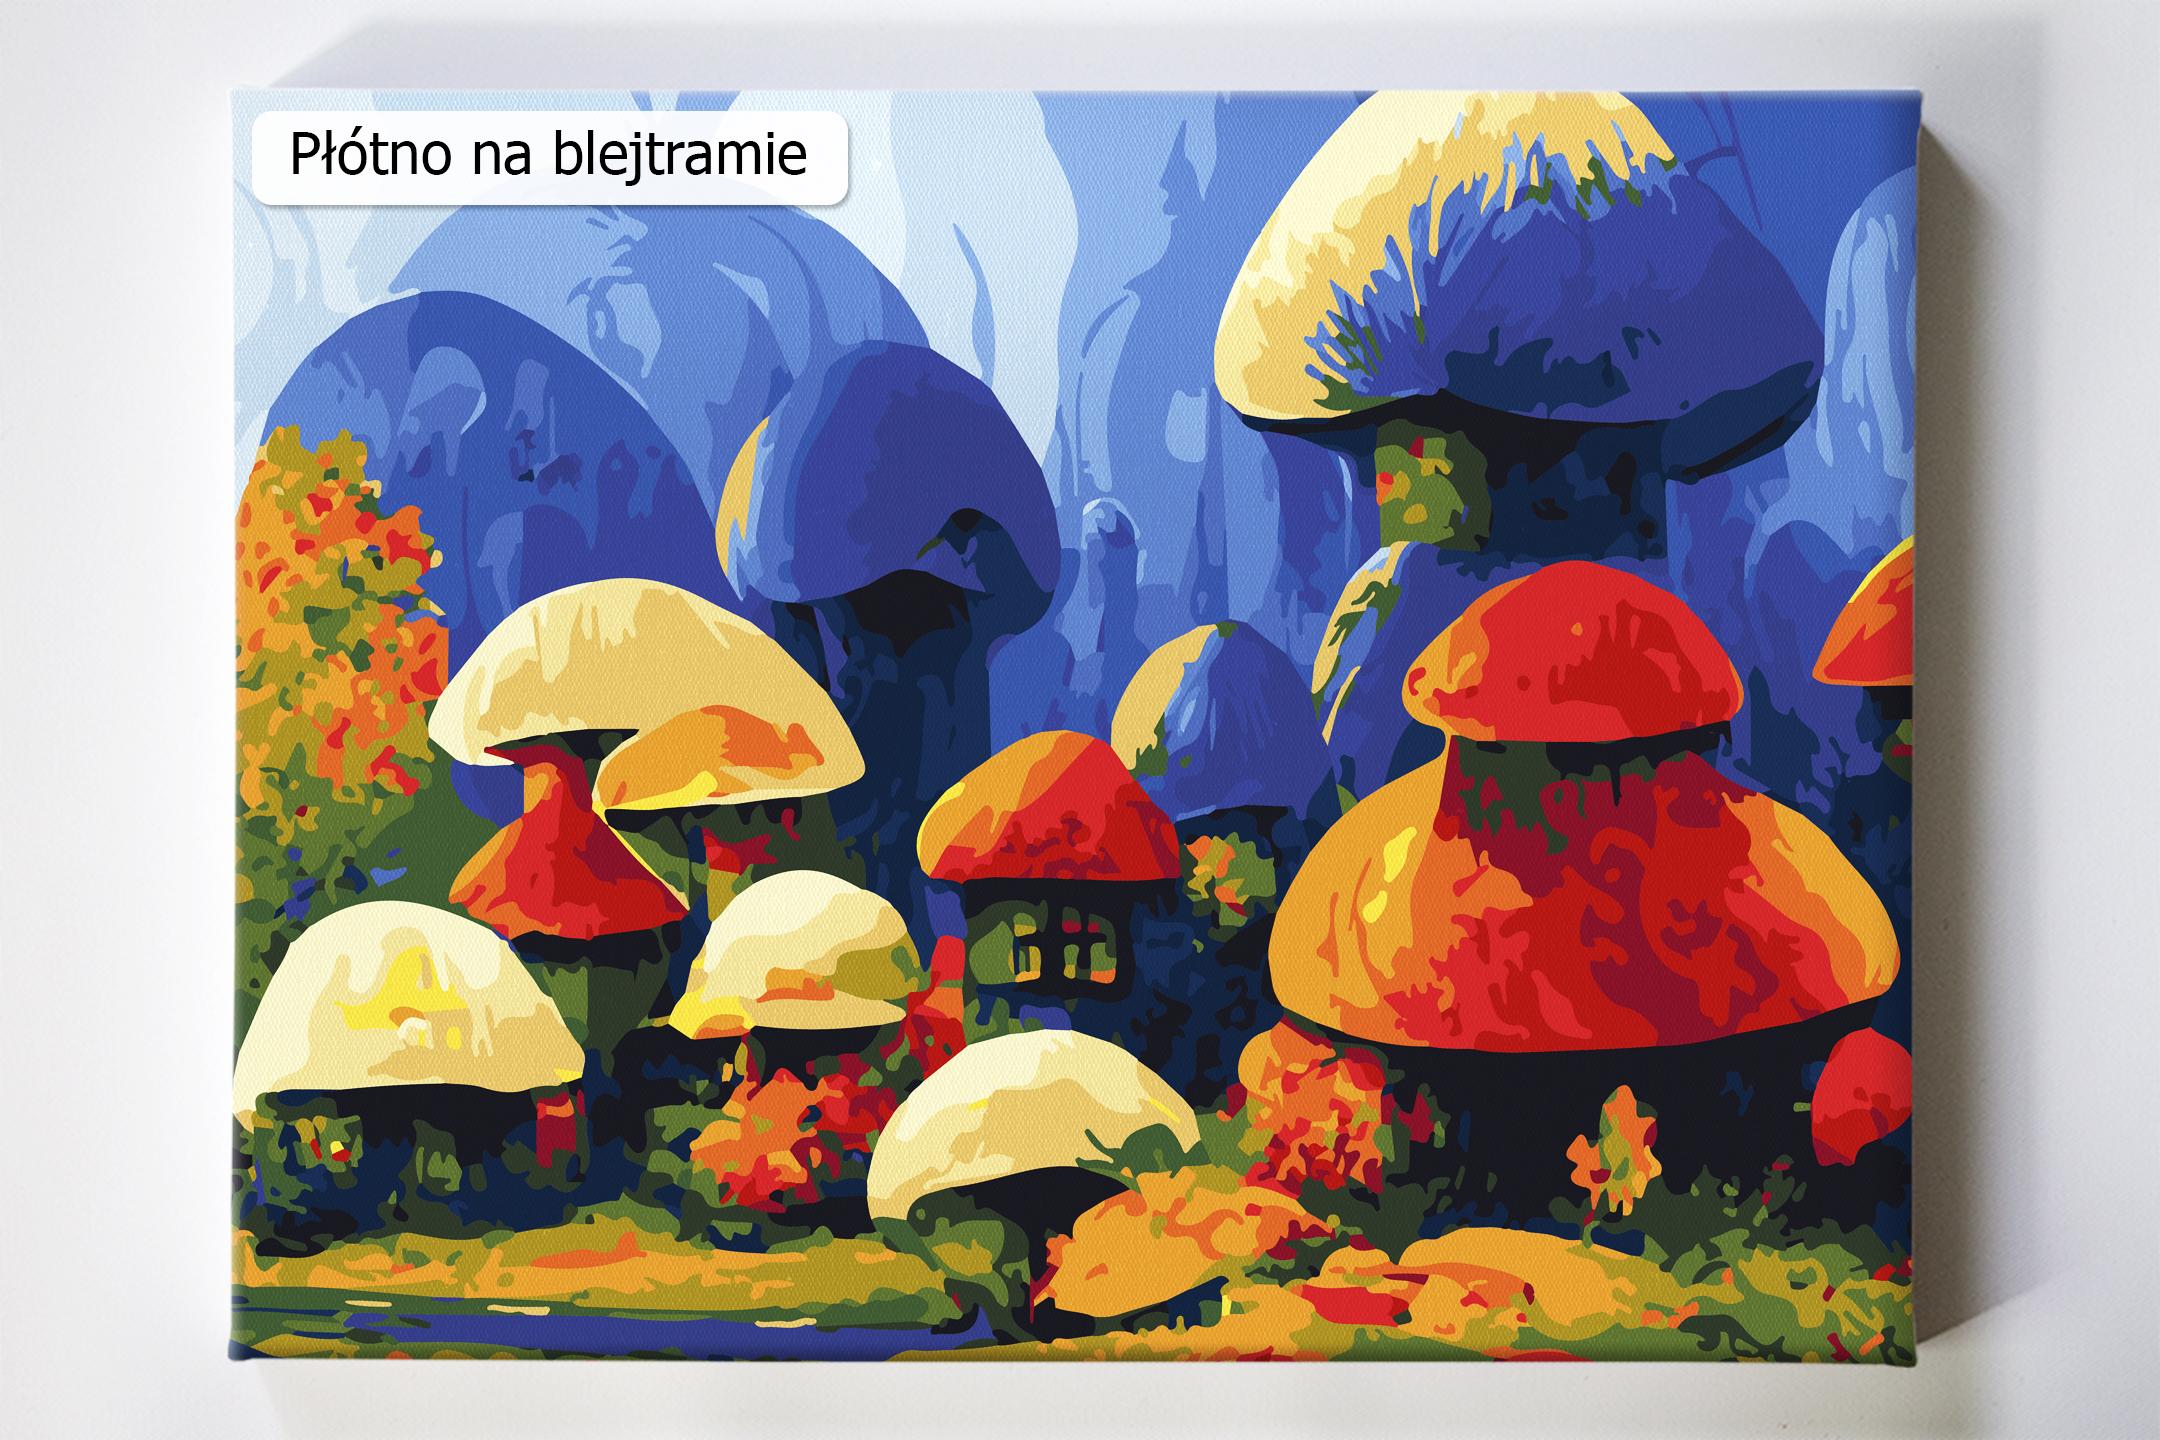 W kolorowej krainie, Smerfy akrylowo.pl sklep z obrazami do malowania po numerach, malowanie po numerach, maluj numerami, wzory po numerach, dla dzieci, reprodukcje, bajki